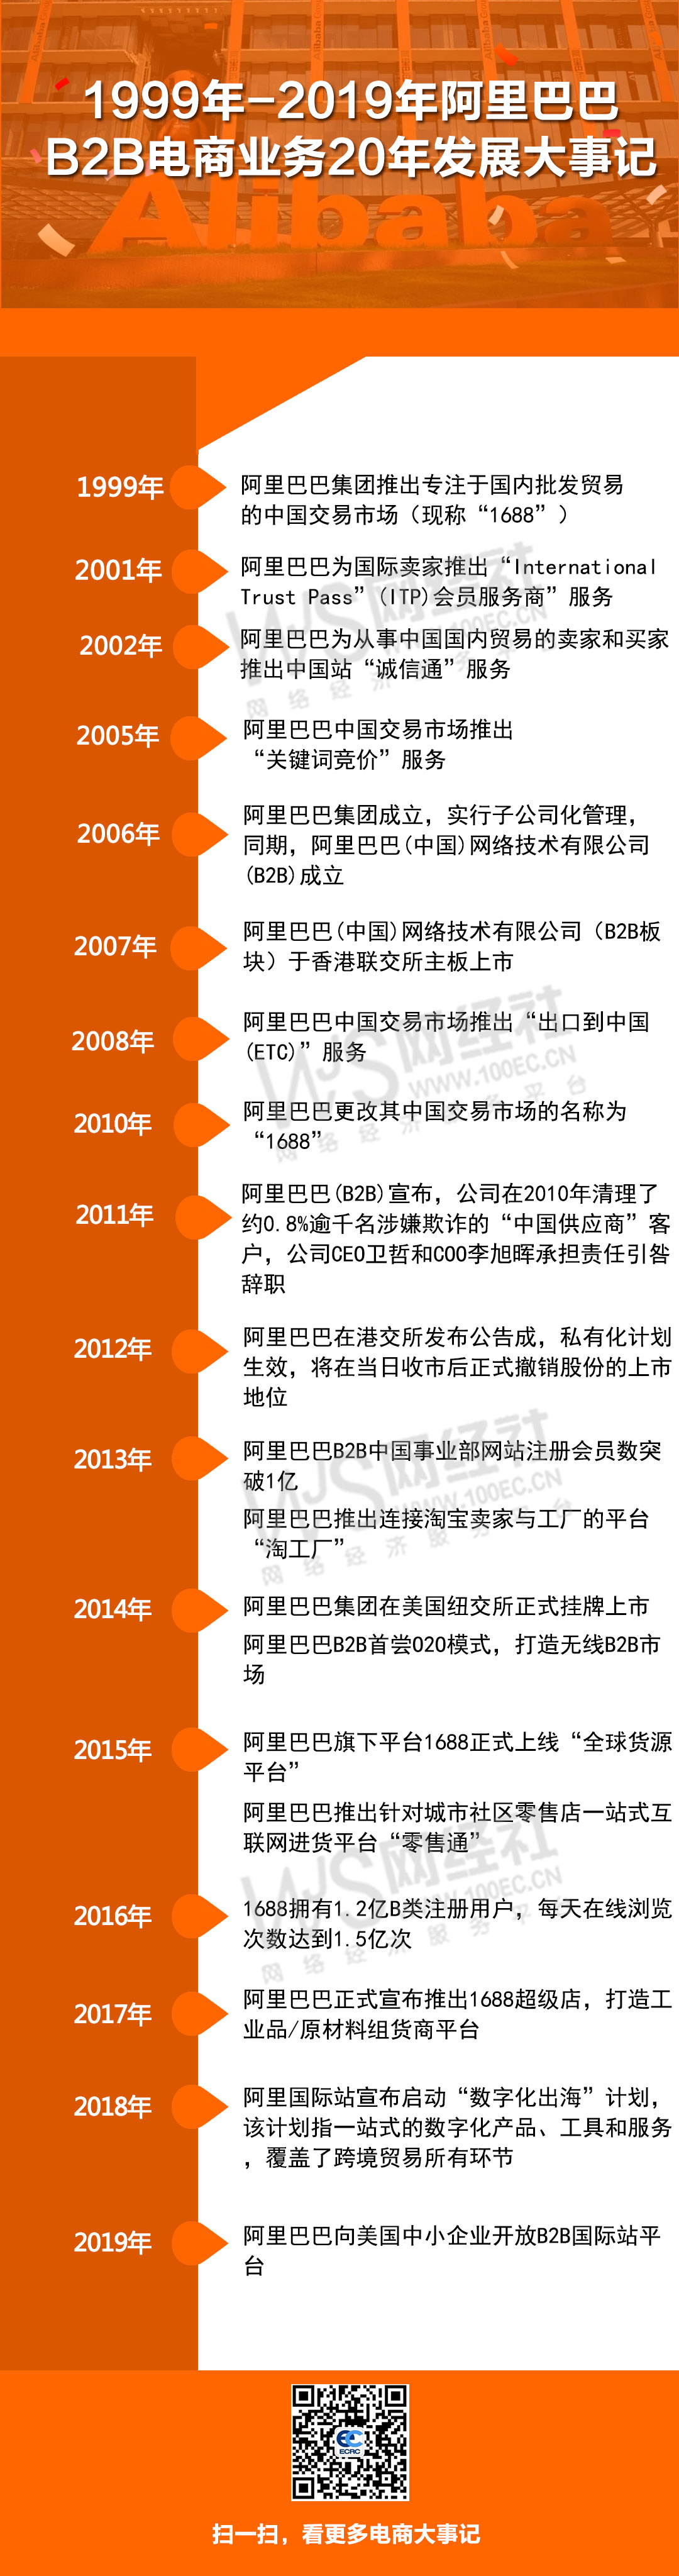 1999-2019阿里B2B电商发展大事记.jpg